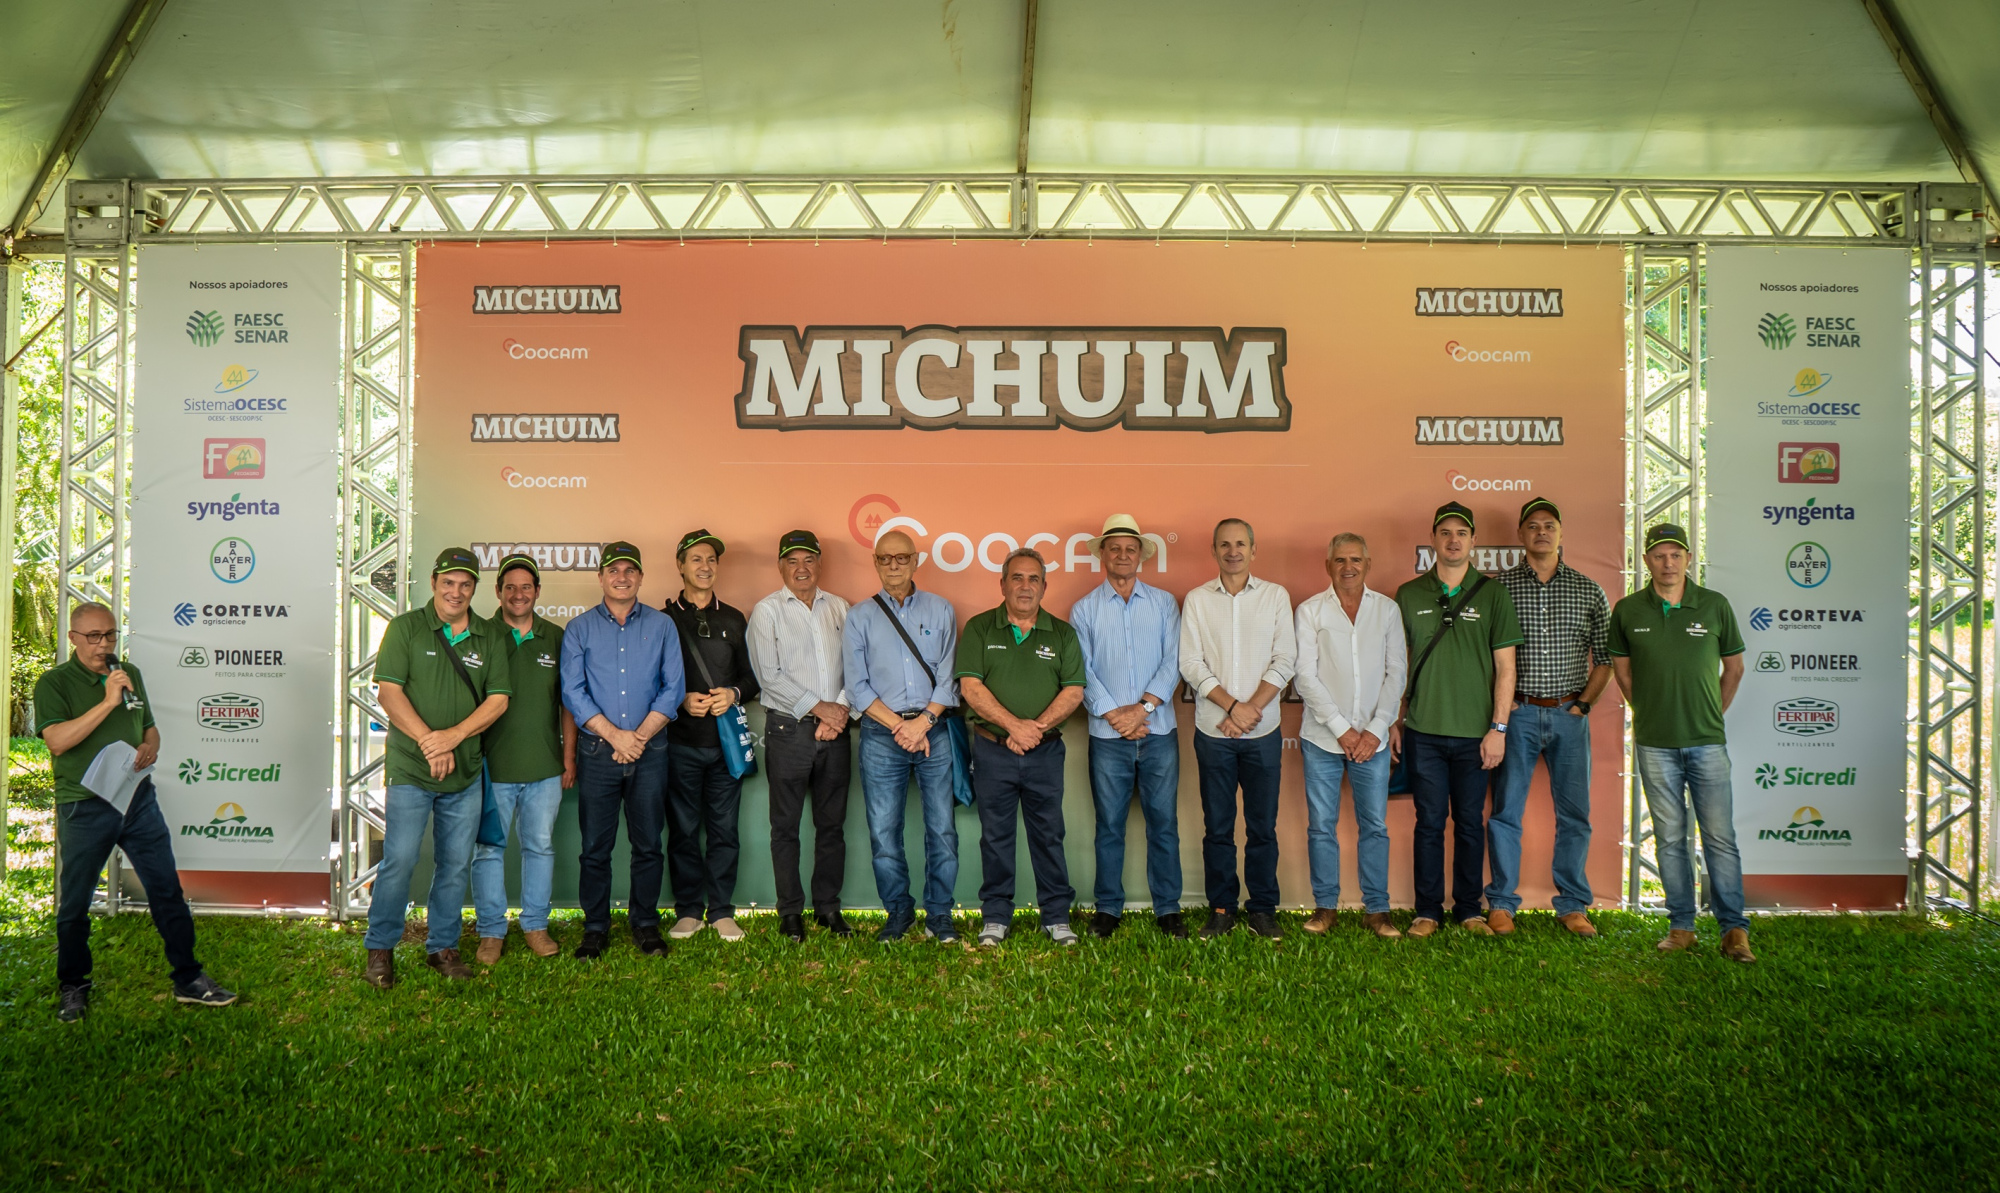 Tradicional Michuim da Coocam aconteceu no último final de semana